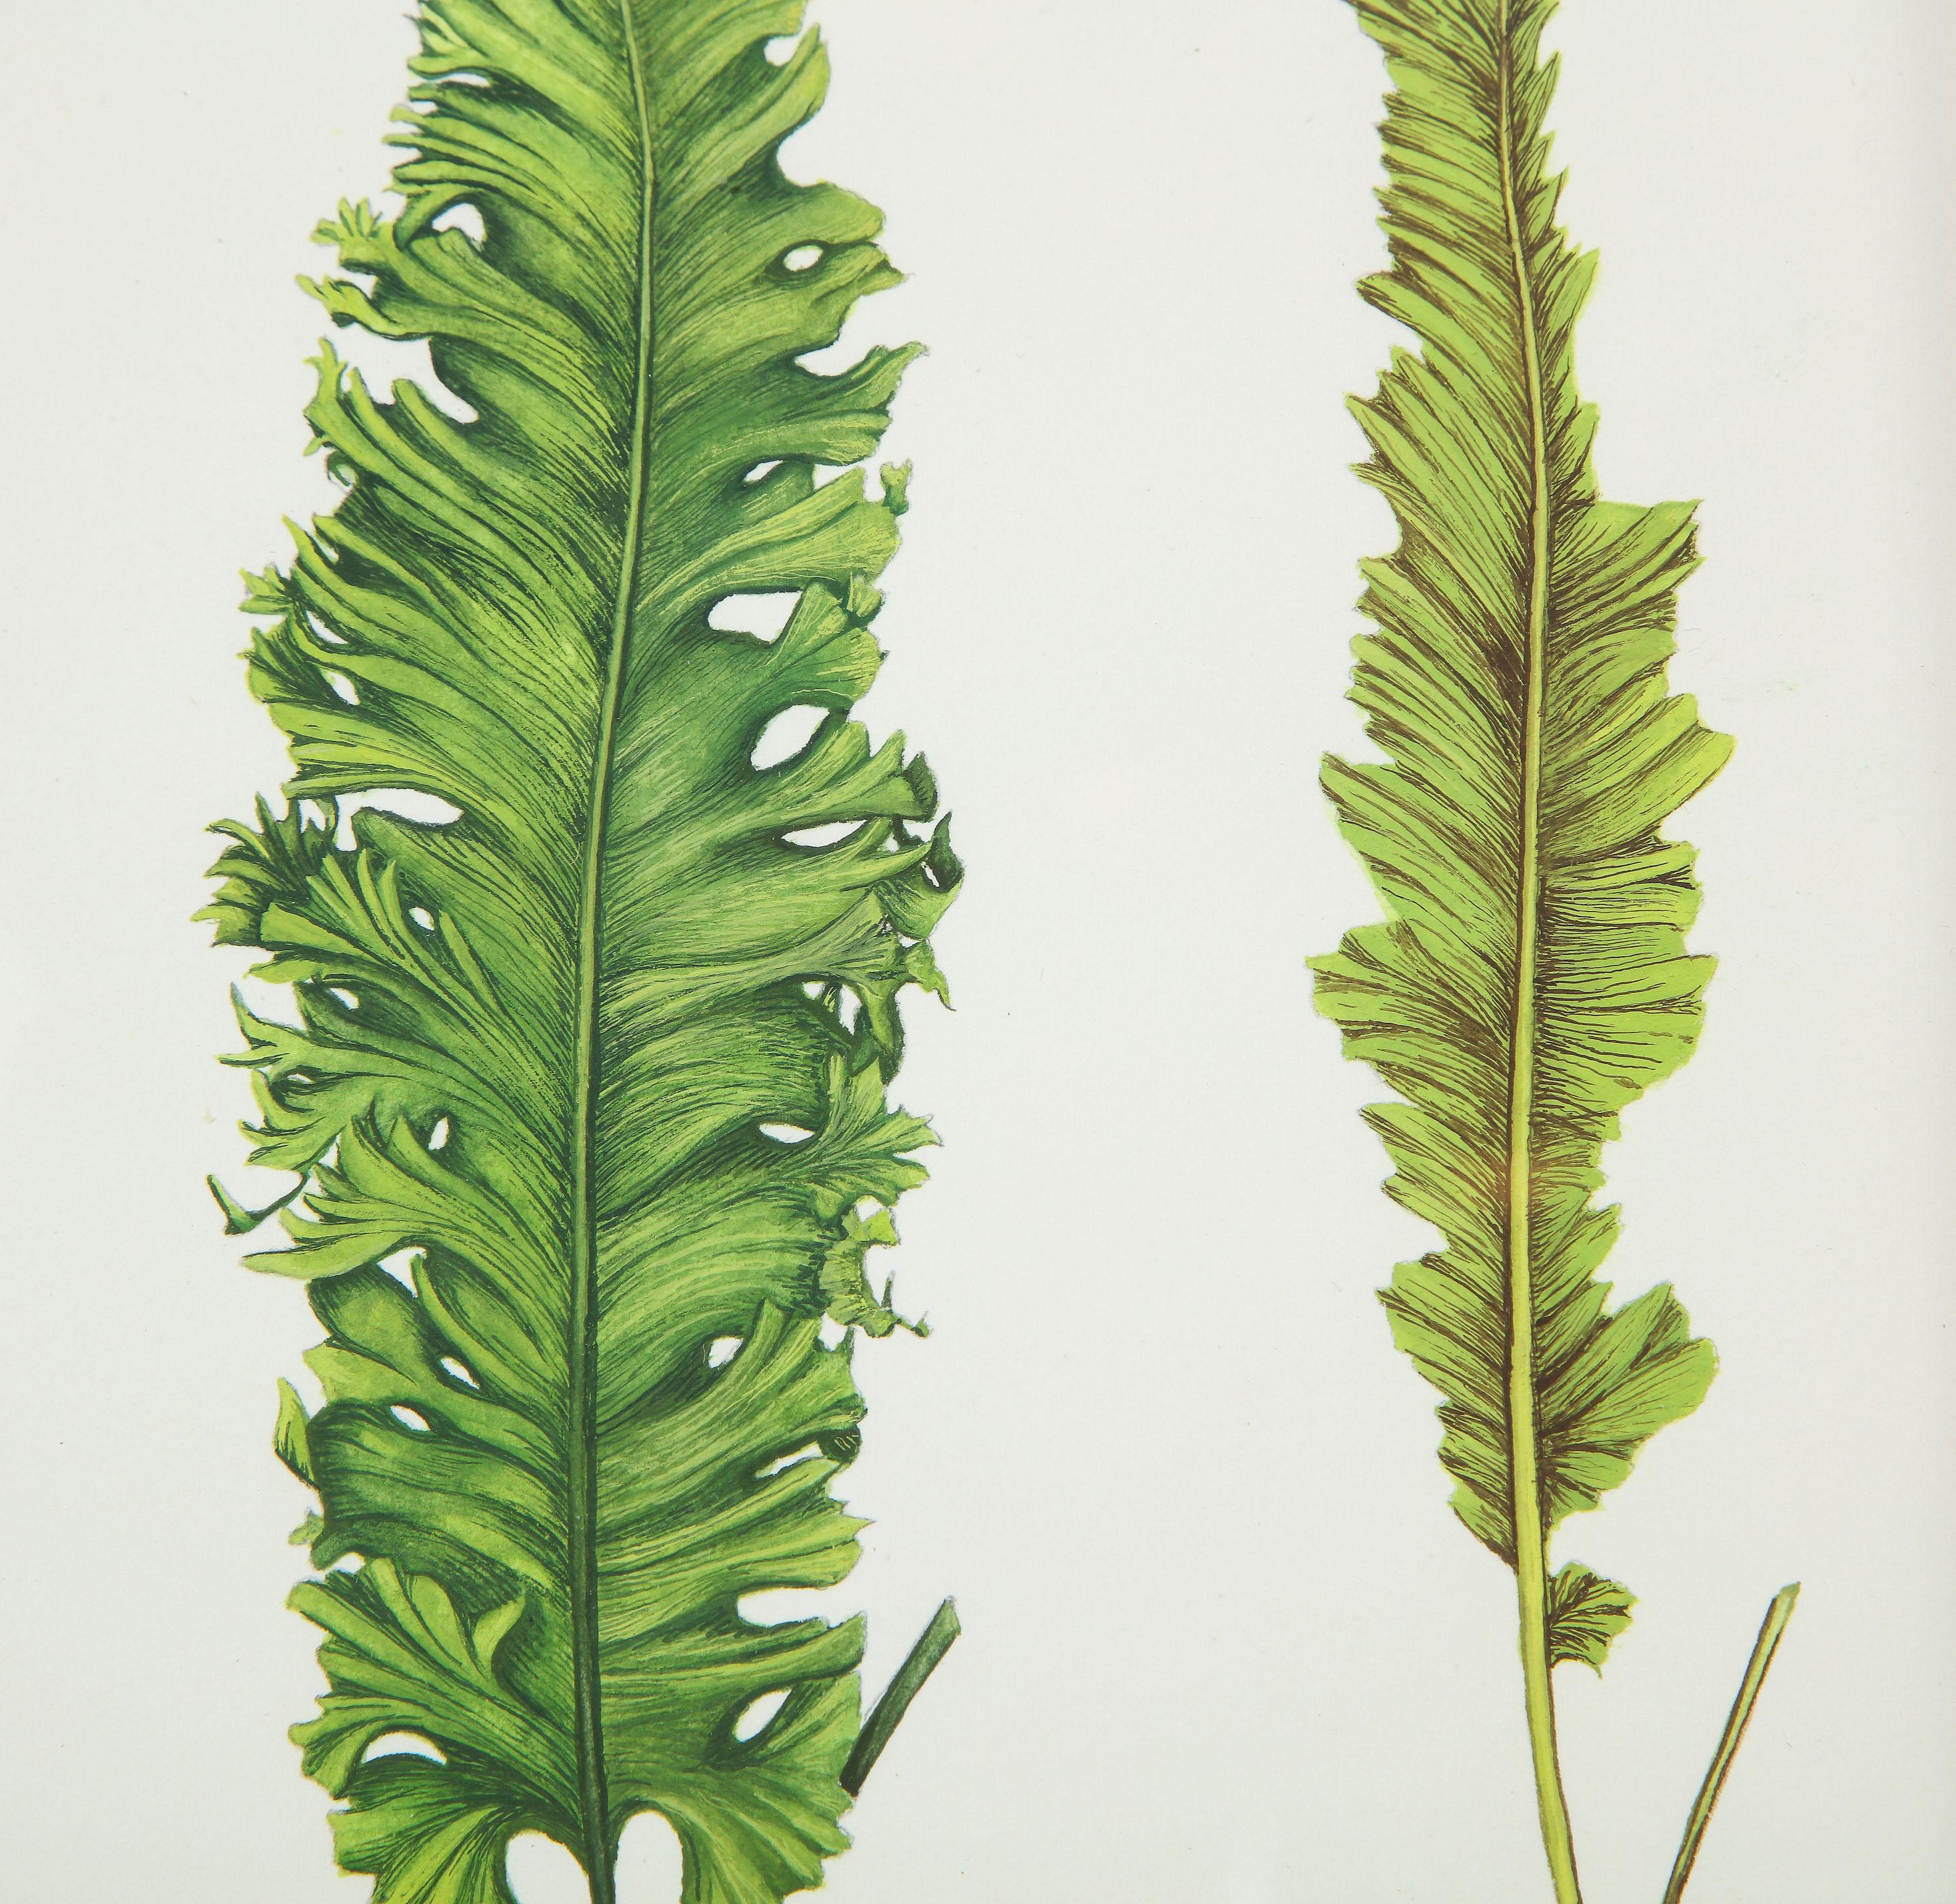 Botanisches Exemplar eines Farnwedels mit zwei Ansichten der Künstlerin Abigail Vogel aus East Hampton. Die Abmessungen sind gerahmt.   

Abigail Vogel wusste von Anfang an, dass sie eine Künstlerin ist. Im Alter von vier Jahren zeichnete und malte